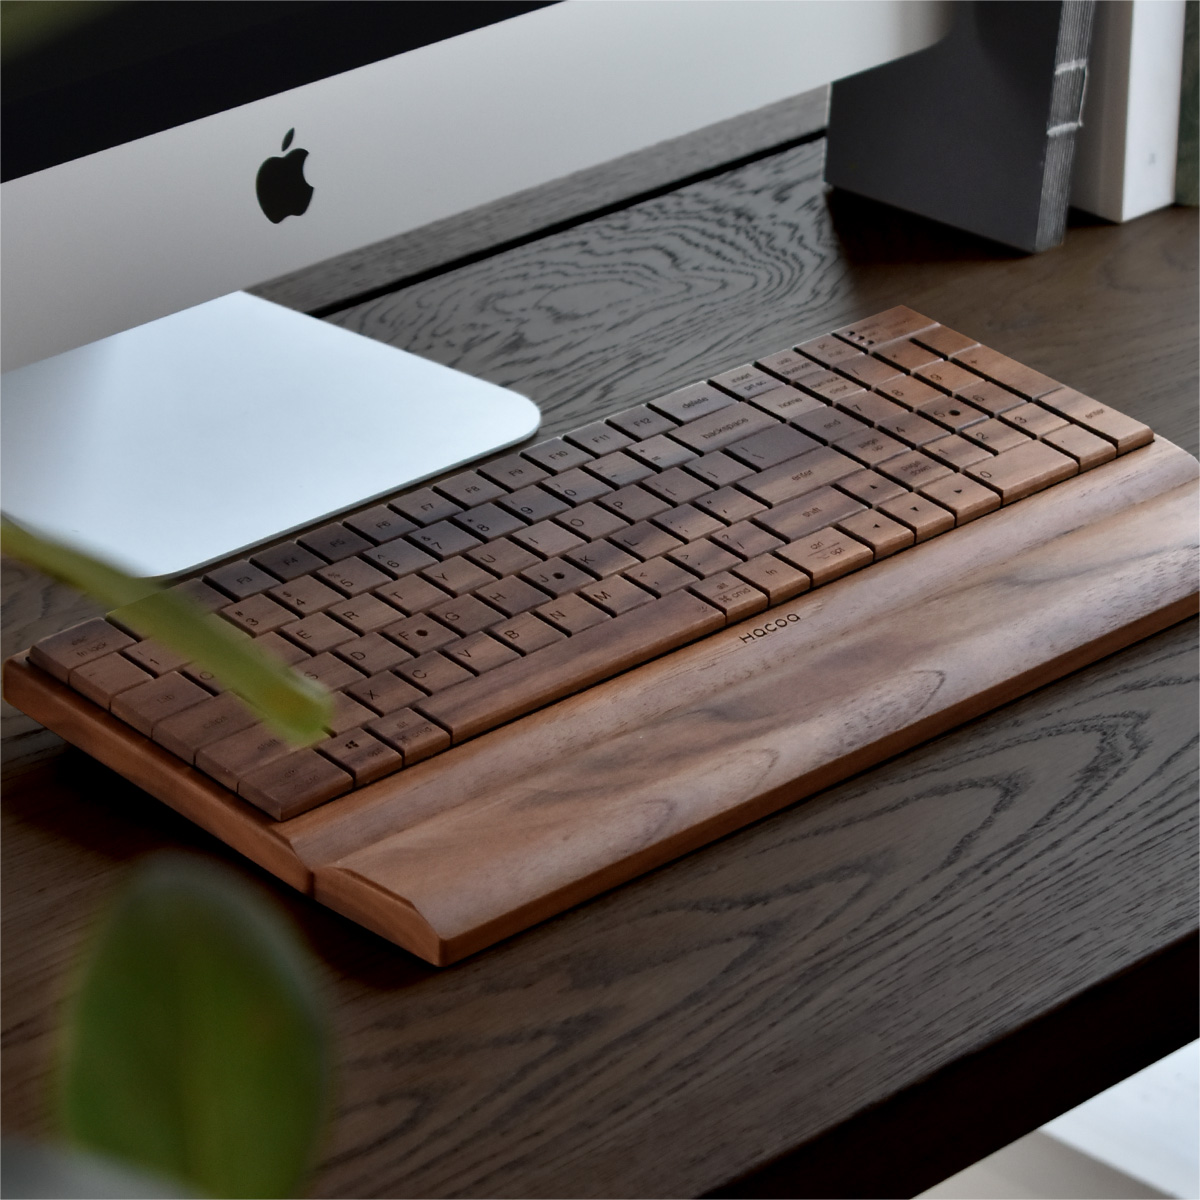 Hacoa dropt magistraal Mac-toetsenbord die volledig van hout is